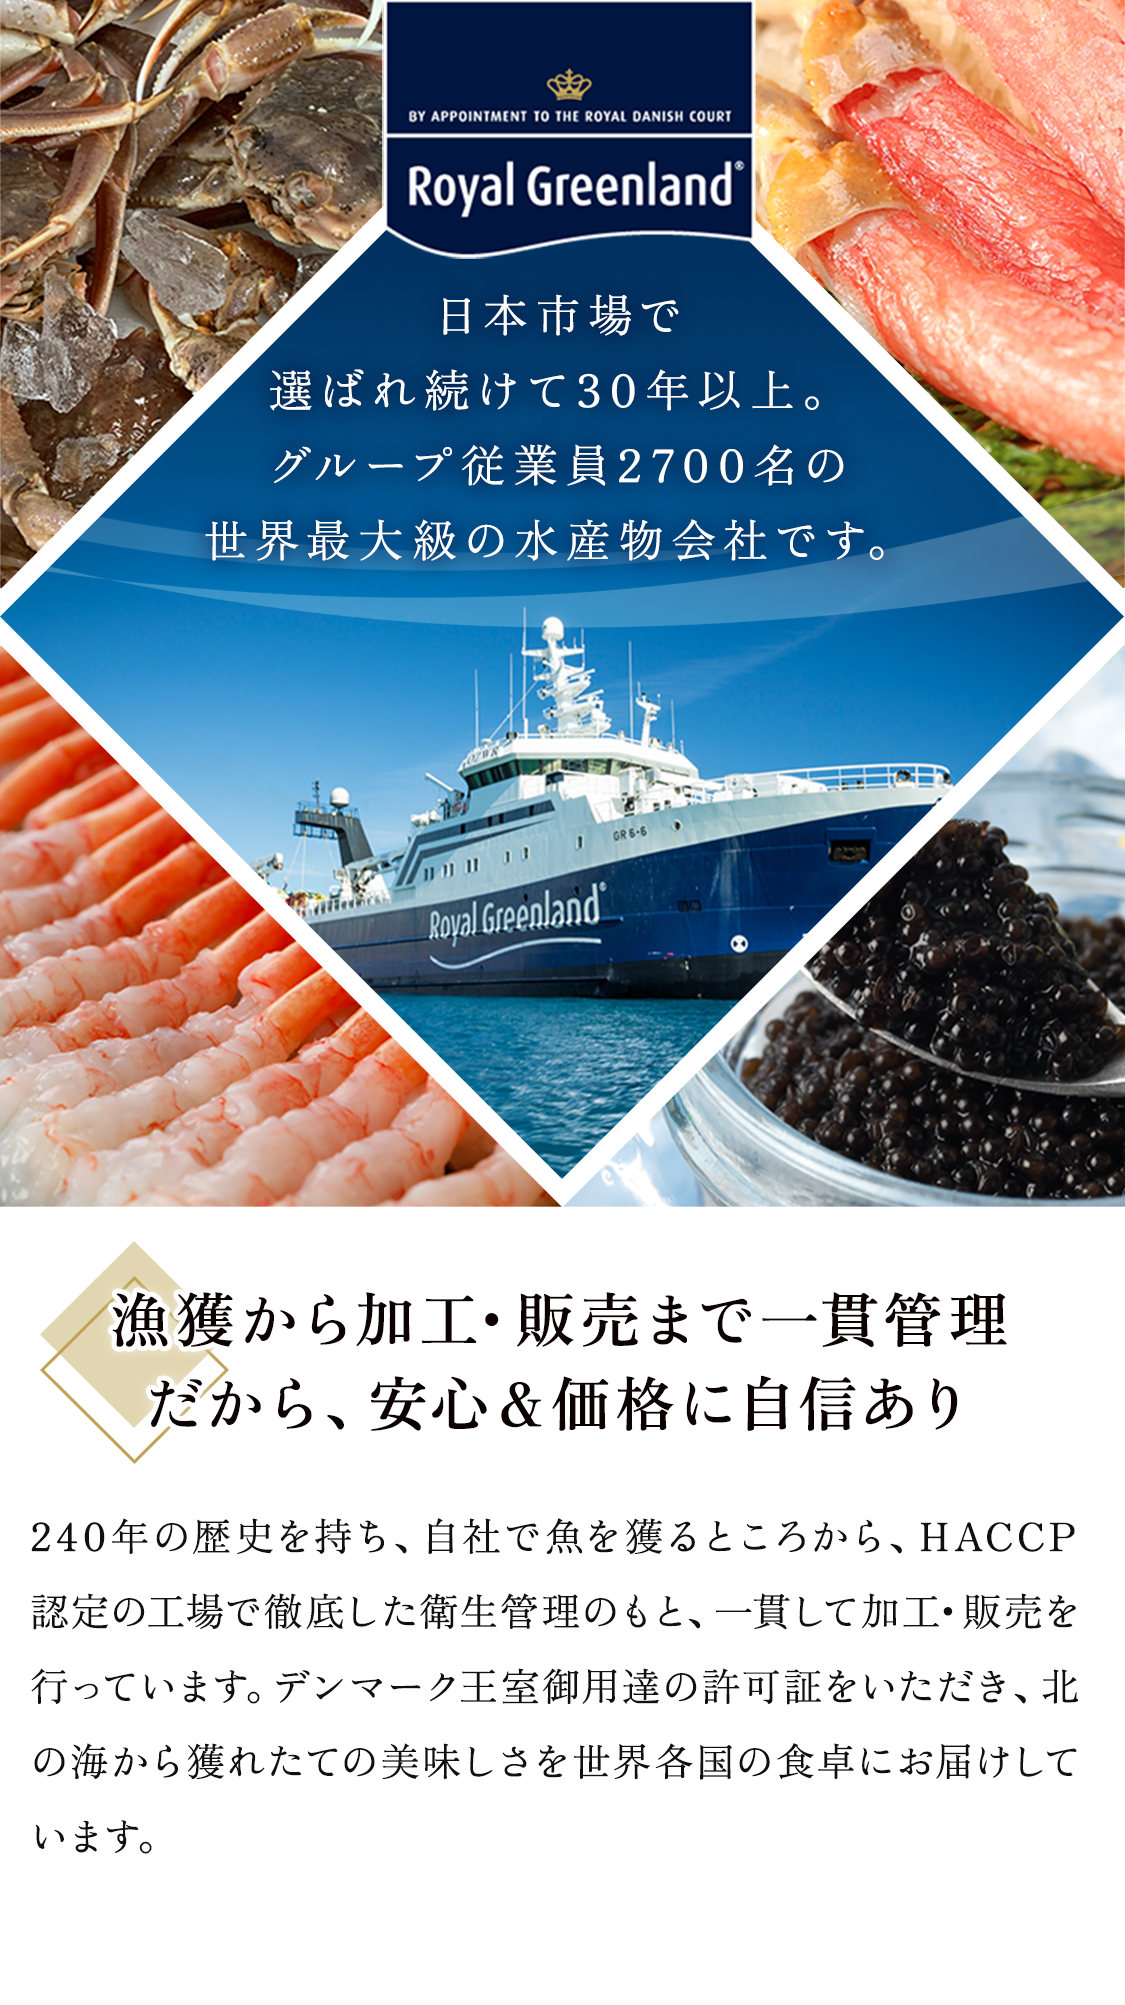 日本市場で選ばれ続けて30年以上。グループ従業員2700名の世界最大級の水産物会社です。